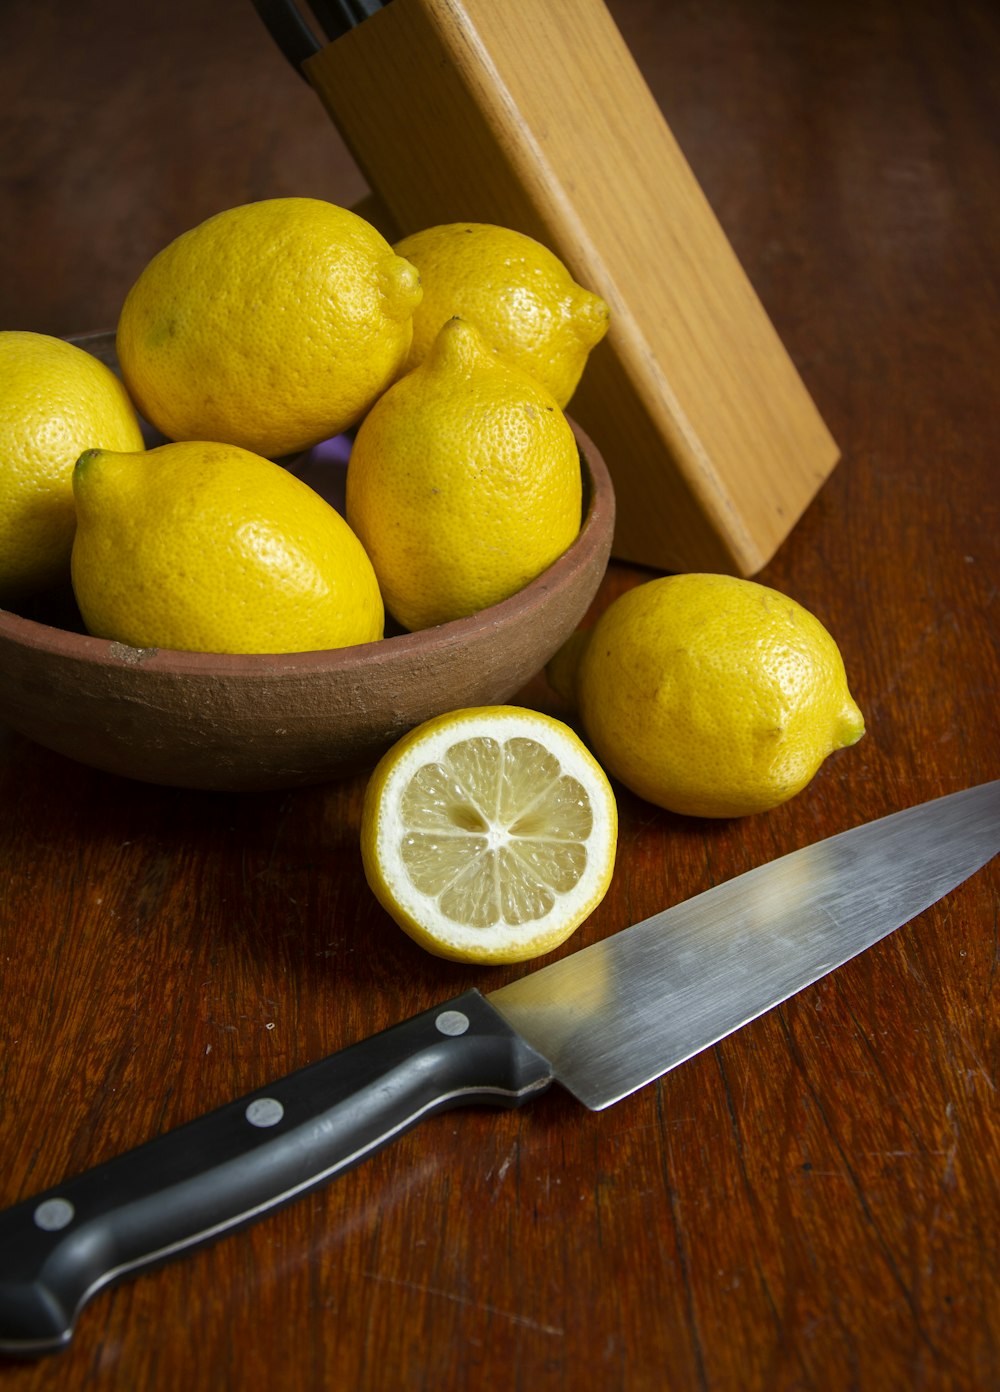 sliced lemon beside black handled knife on brown wooden table